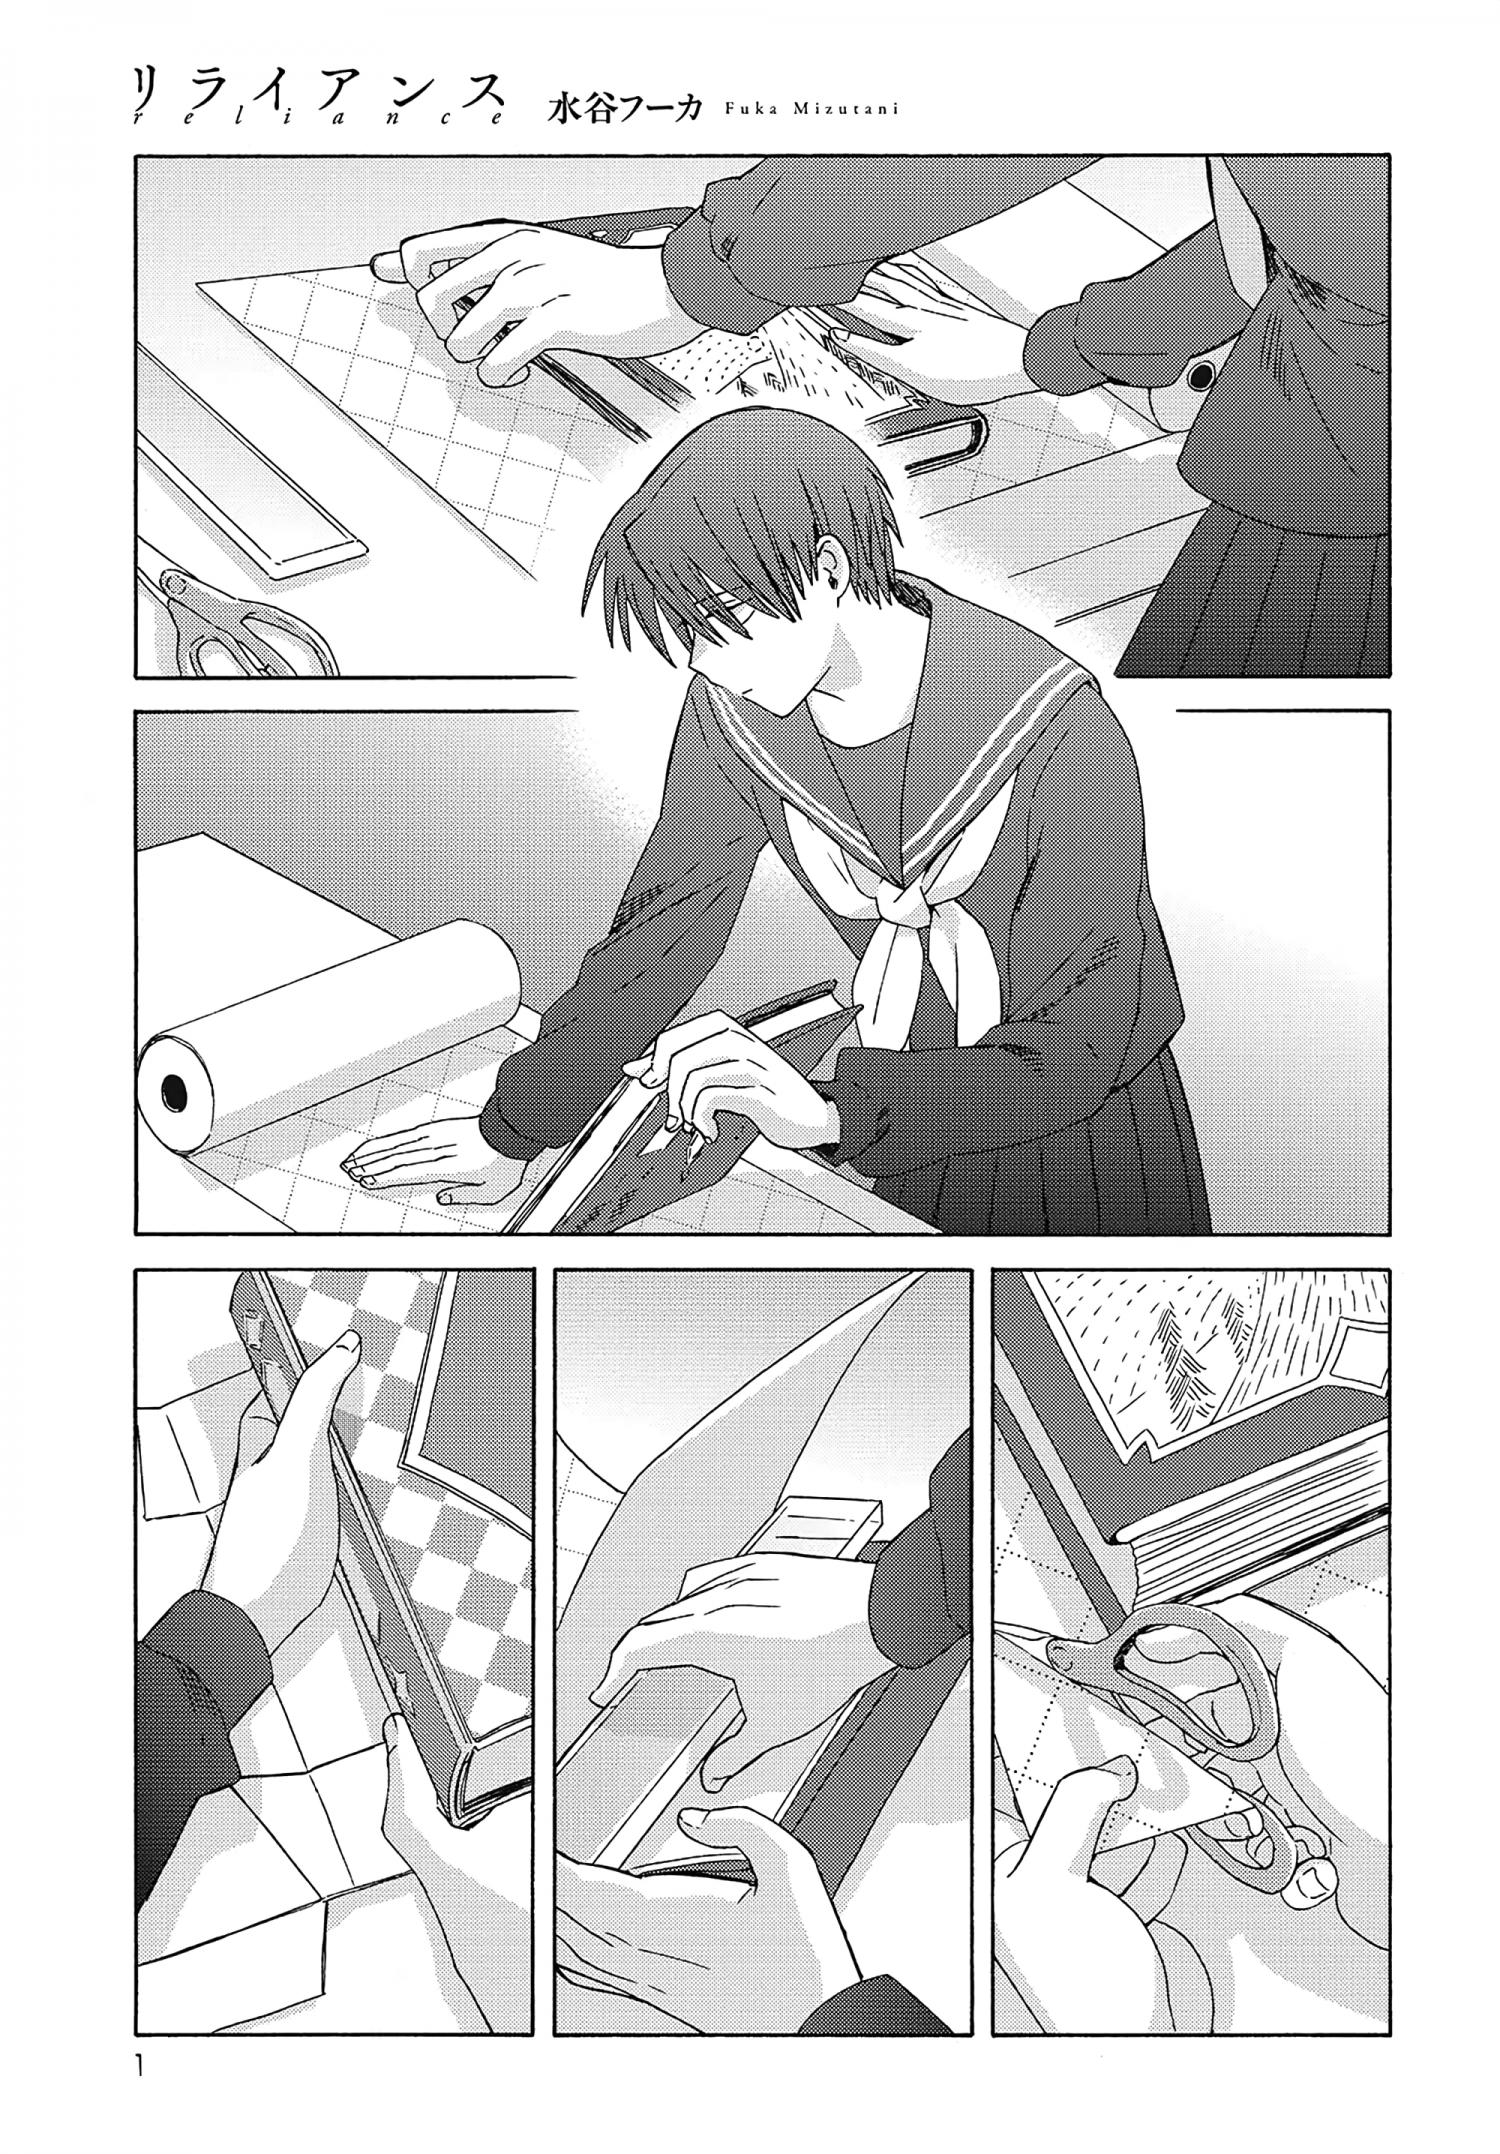 Mizutani Fuka - Page 1